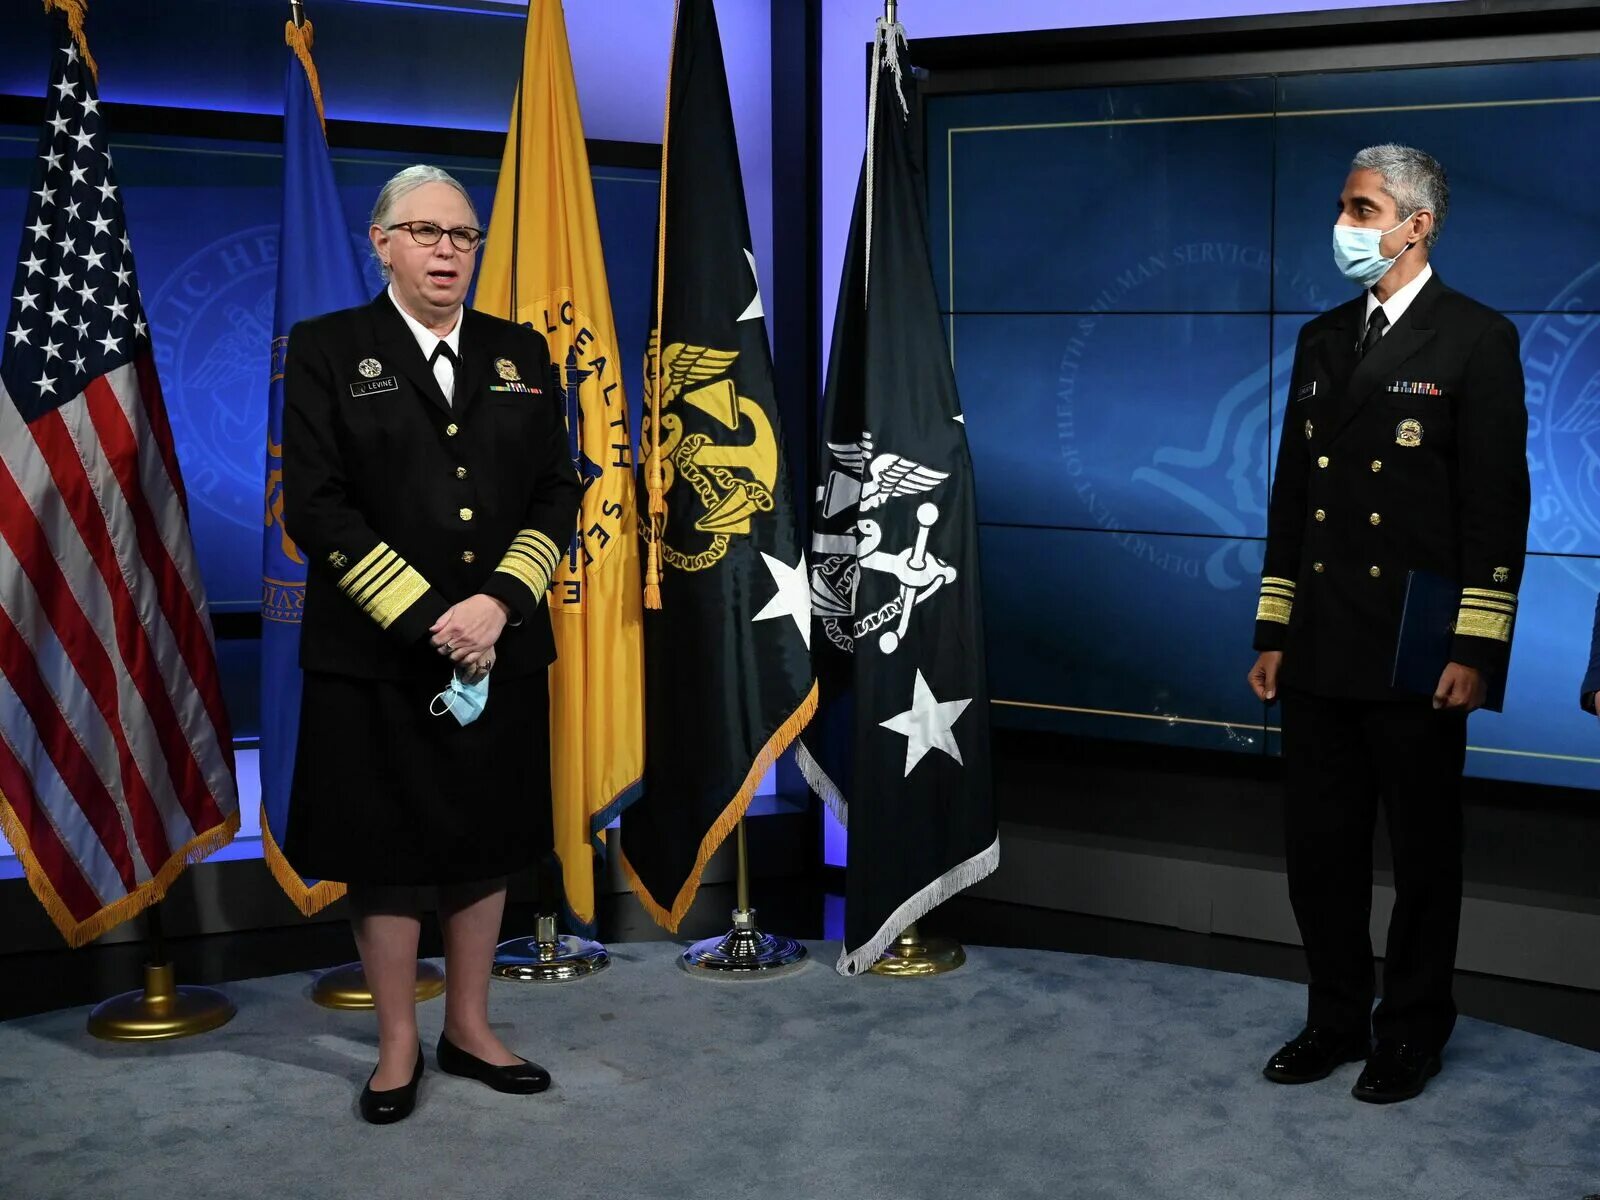 Министры трансгендеры. Адмирал США Рэйчел Левин. Трансгендер Адмирал Левин. ��‍♂️трансгендерный Адмирал США Рейчел. Четырехзвездный Адмирал США трансгендер.